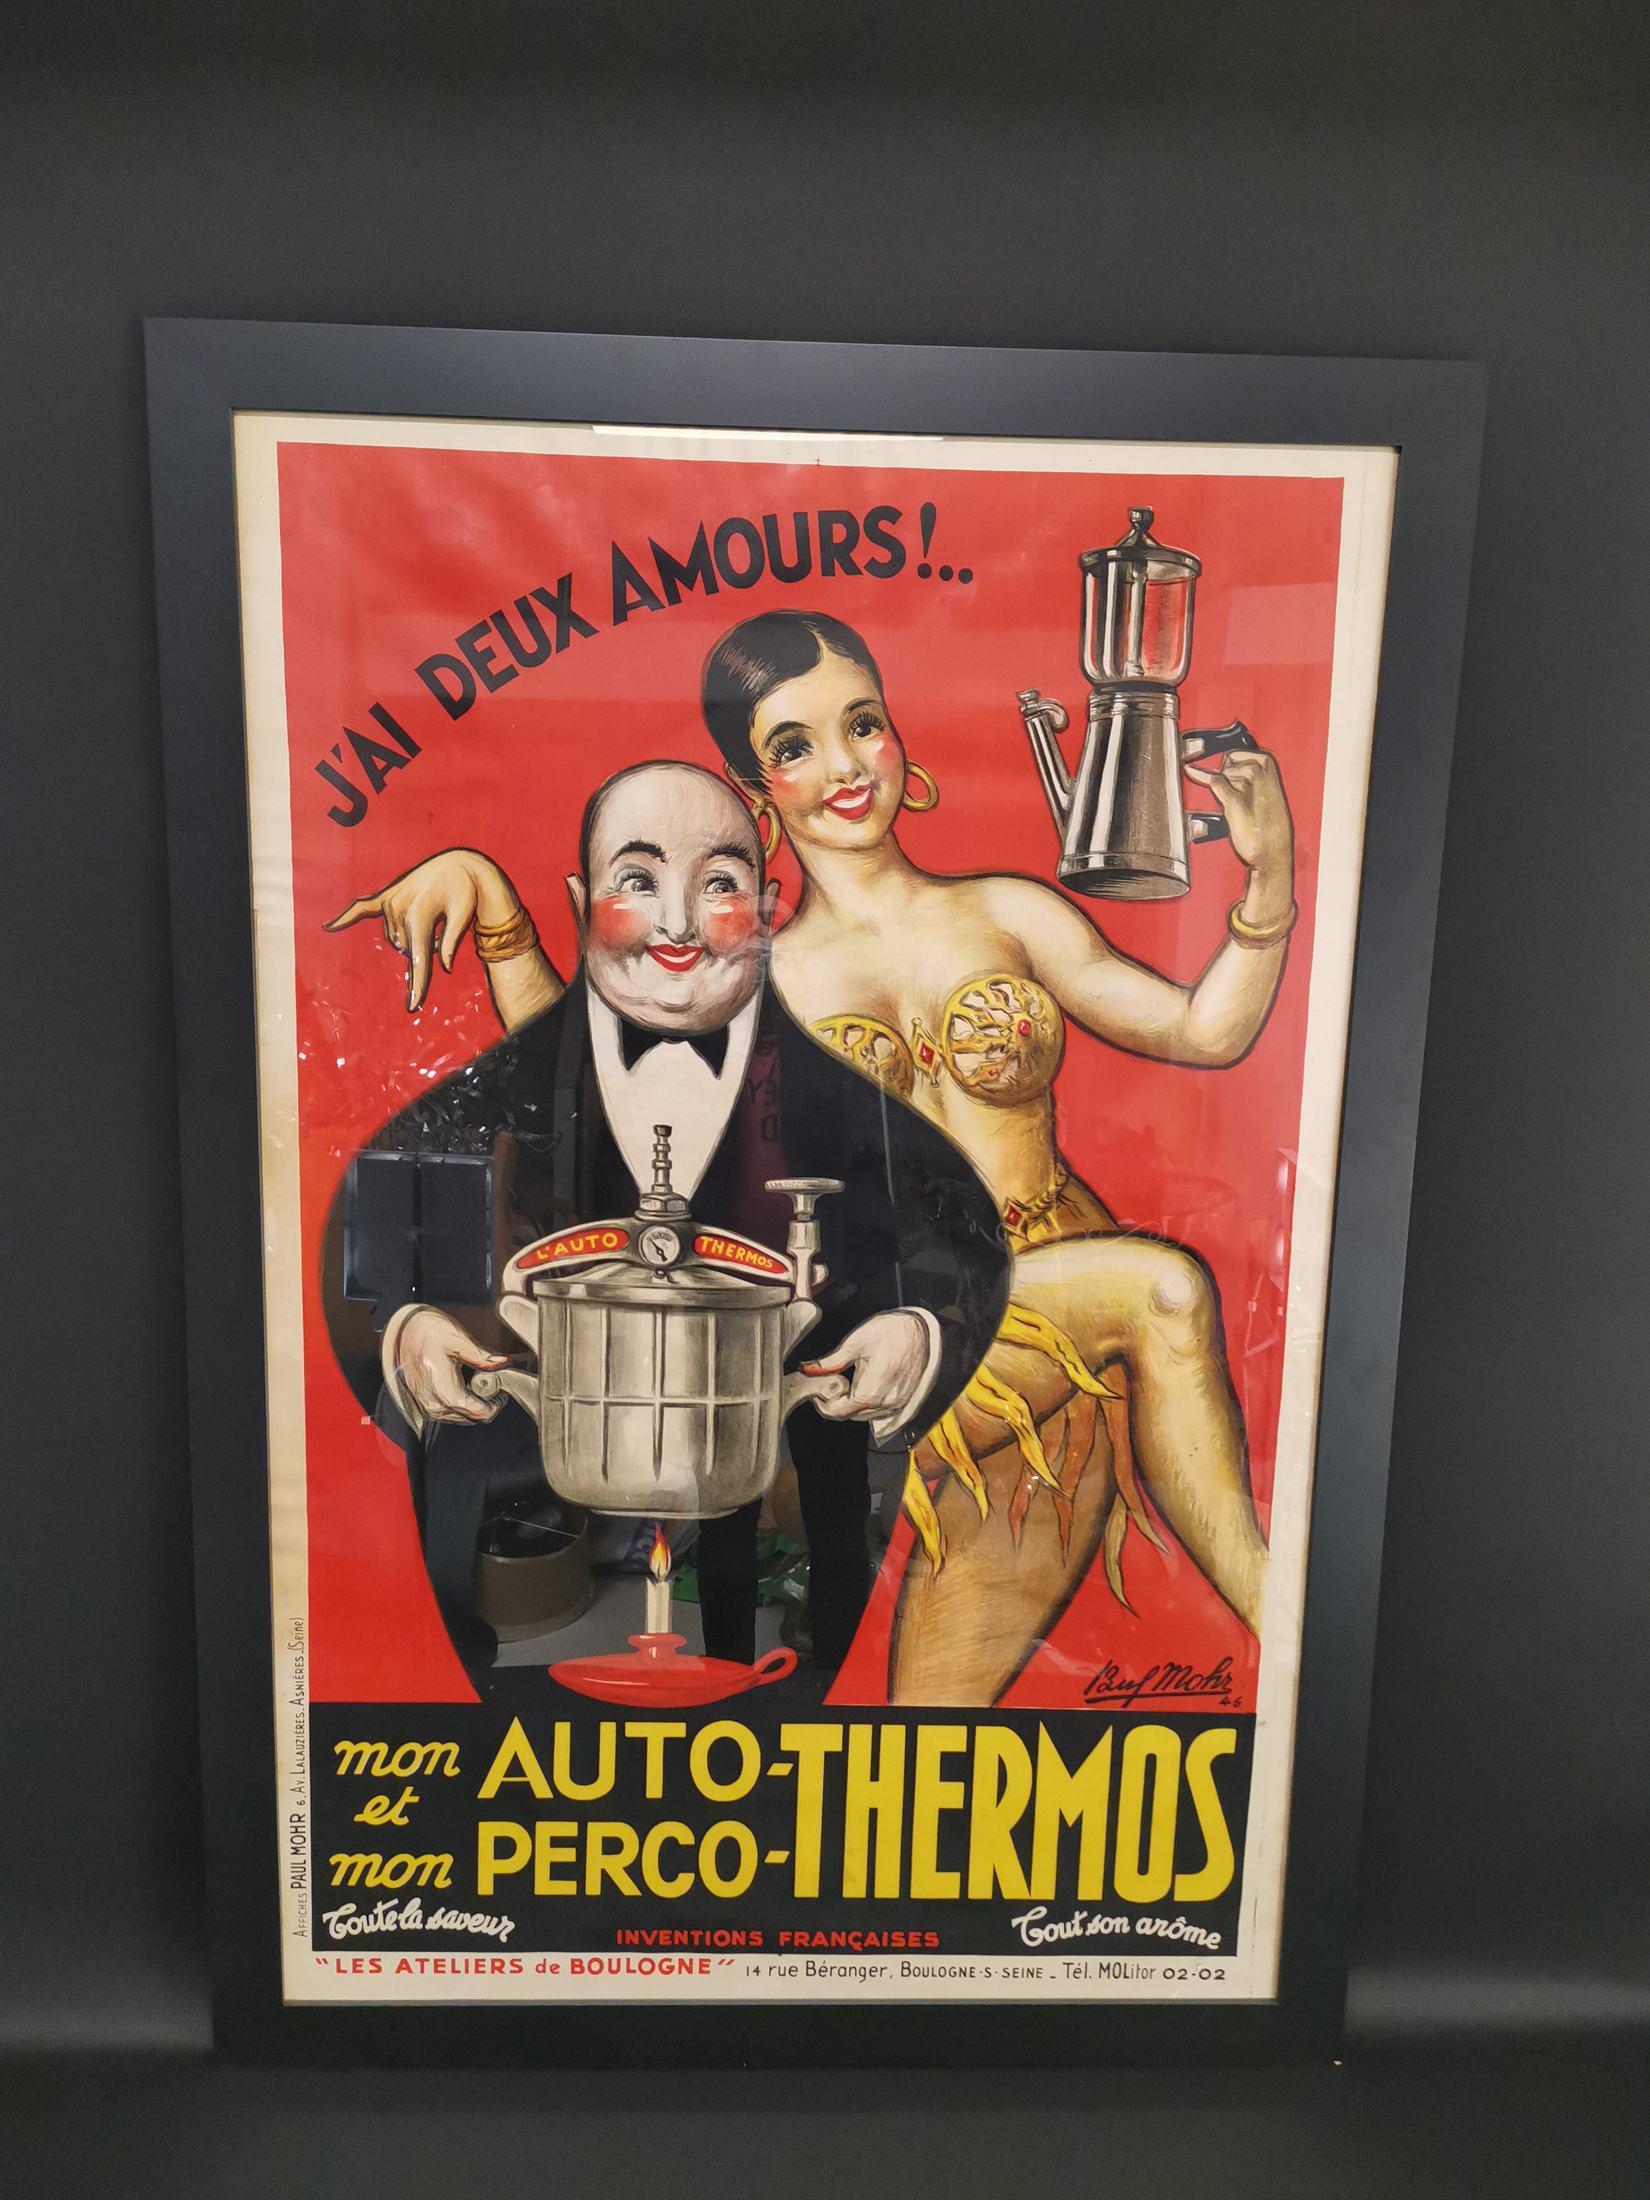 J'ai Deux Amour : les cafetières Auto-Thermos et Perco-thermos ! 
Une lithographie sur pierre spectaculaire, lumineuse et audacieuse de 1946 créée par l'artiste Paul Mohr. 
Mettant en vedette l'icône Joséphine Baker, cette publicité française